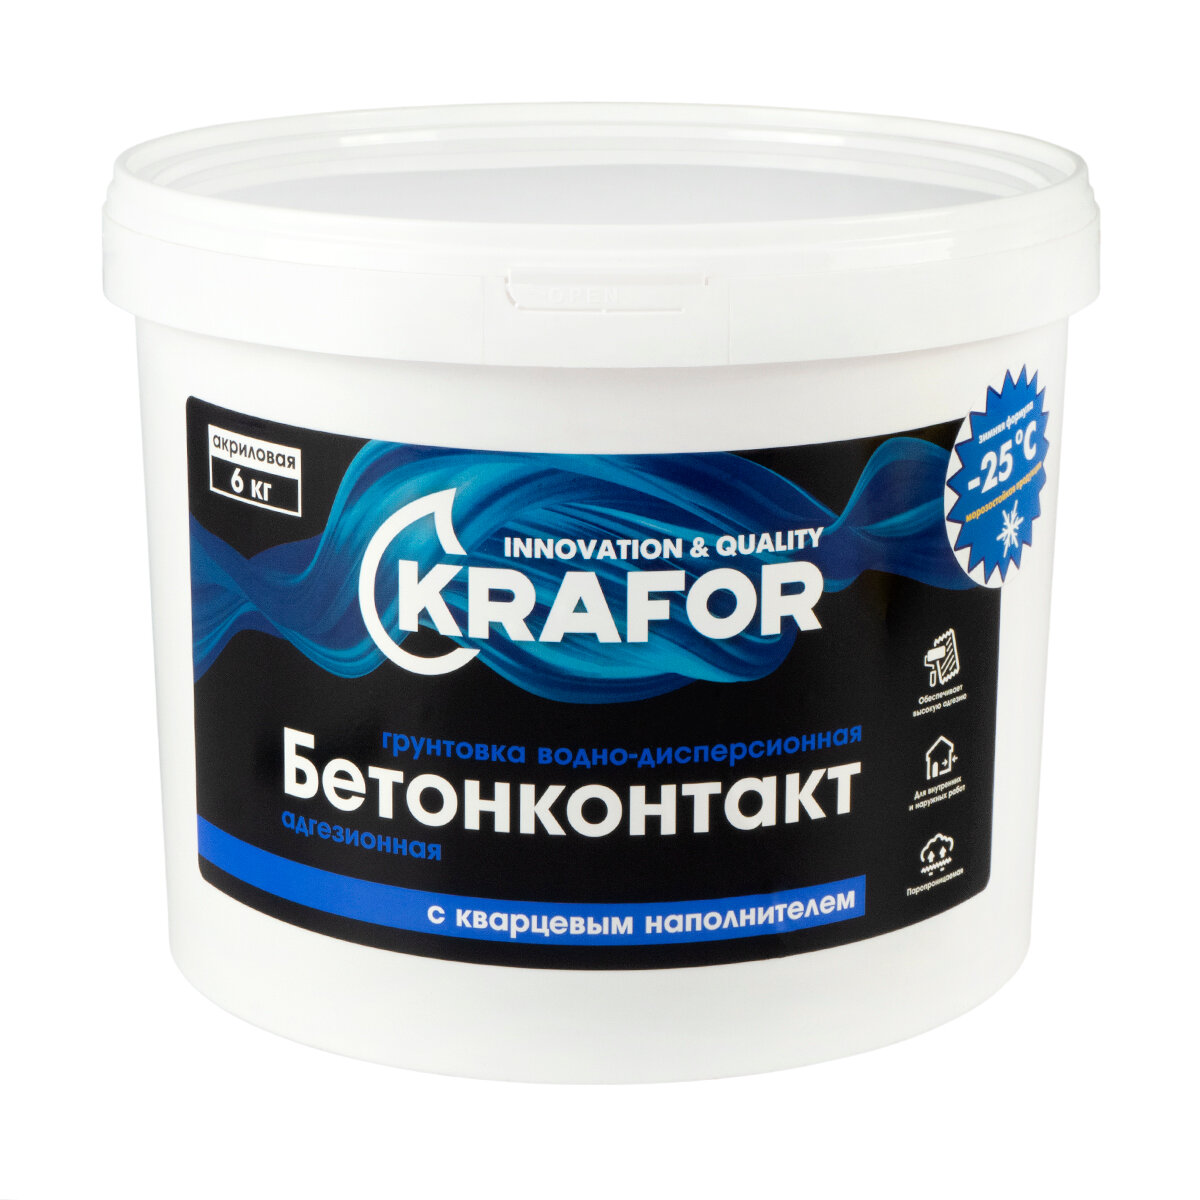 Грунтовка бетон-контакт Krafor, 6 кг